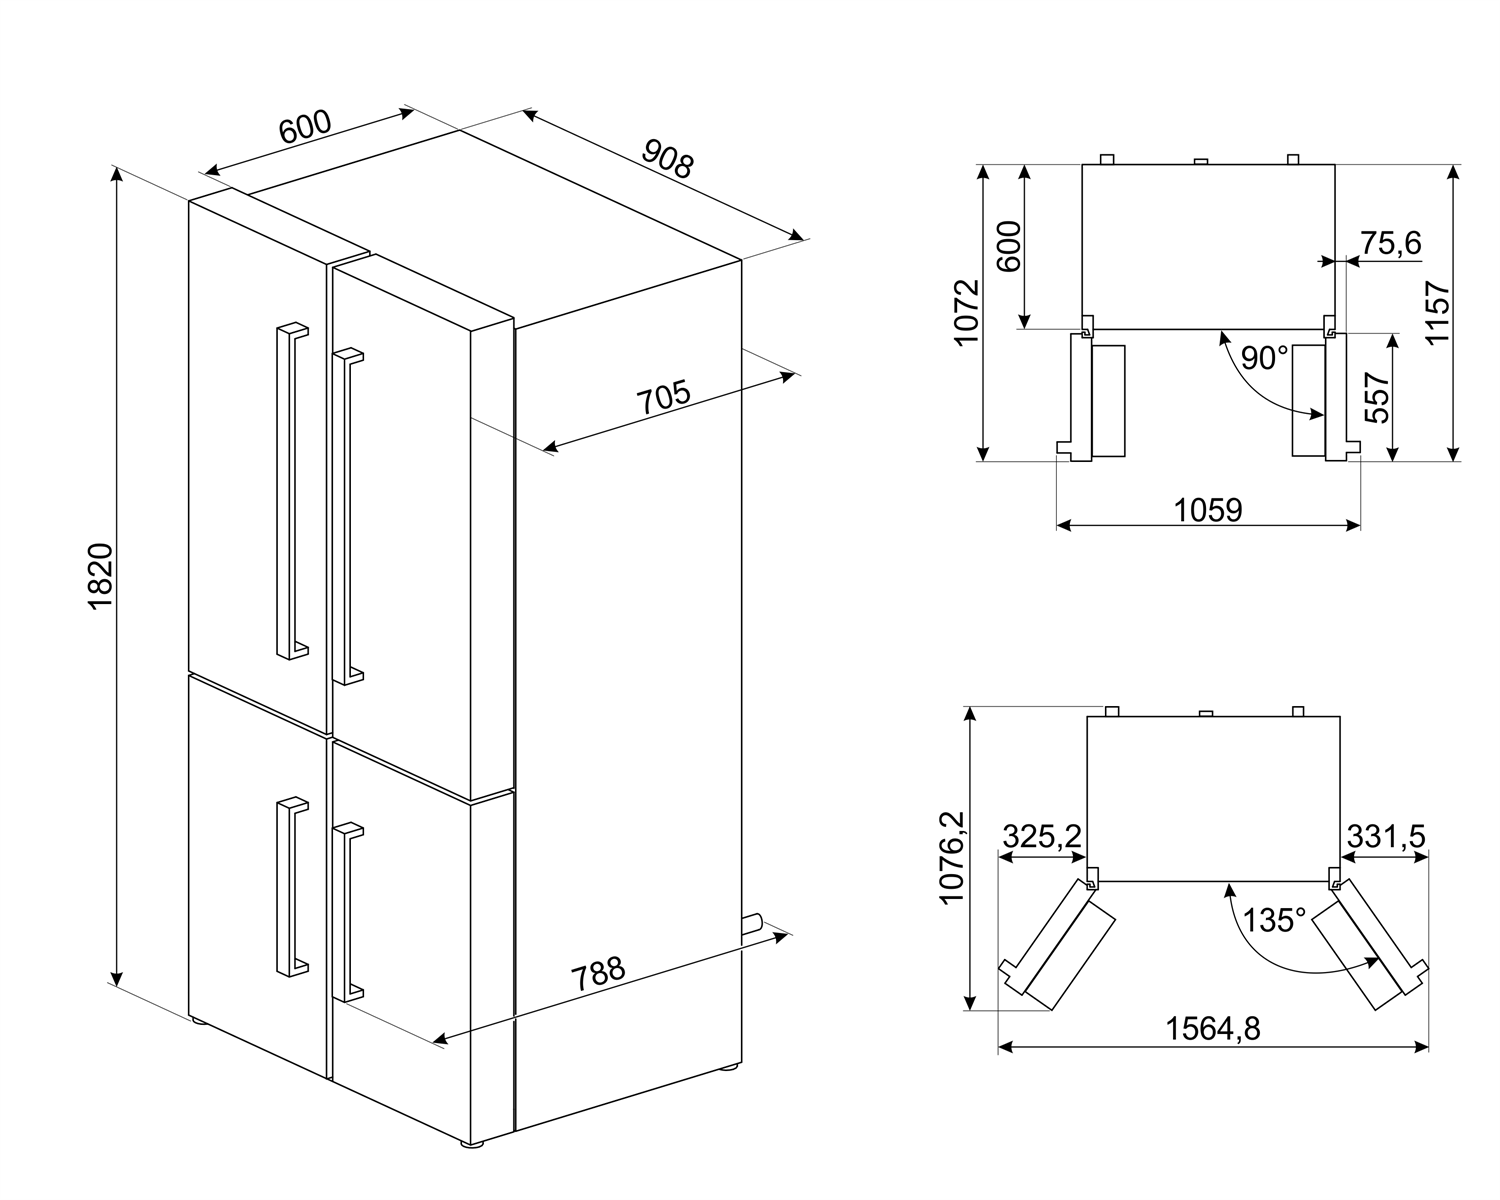 Maattekening SMEG koelkast side-by-side rvs FQ60XDF